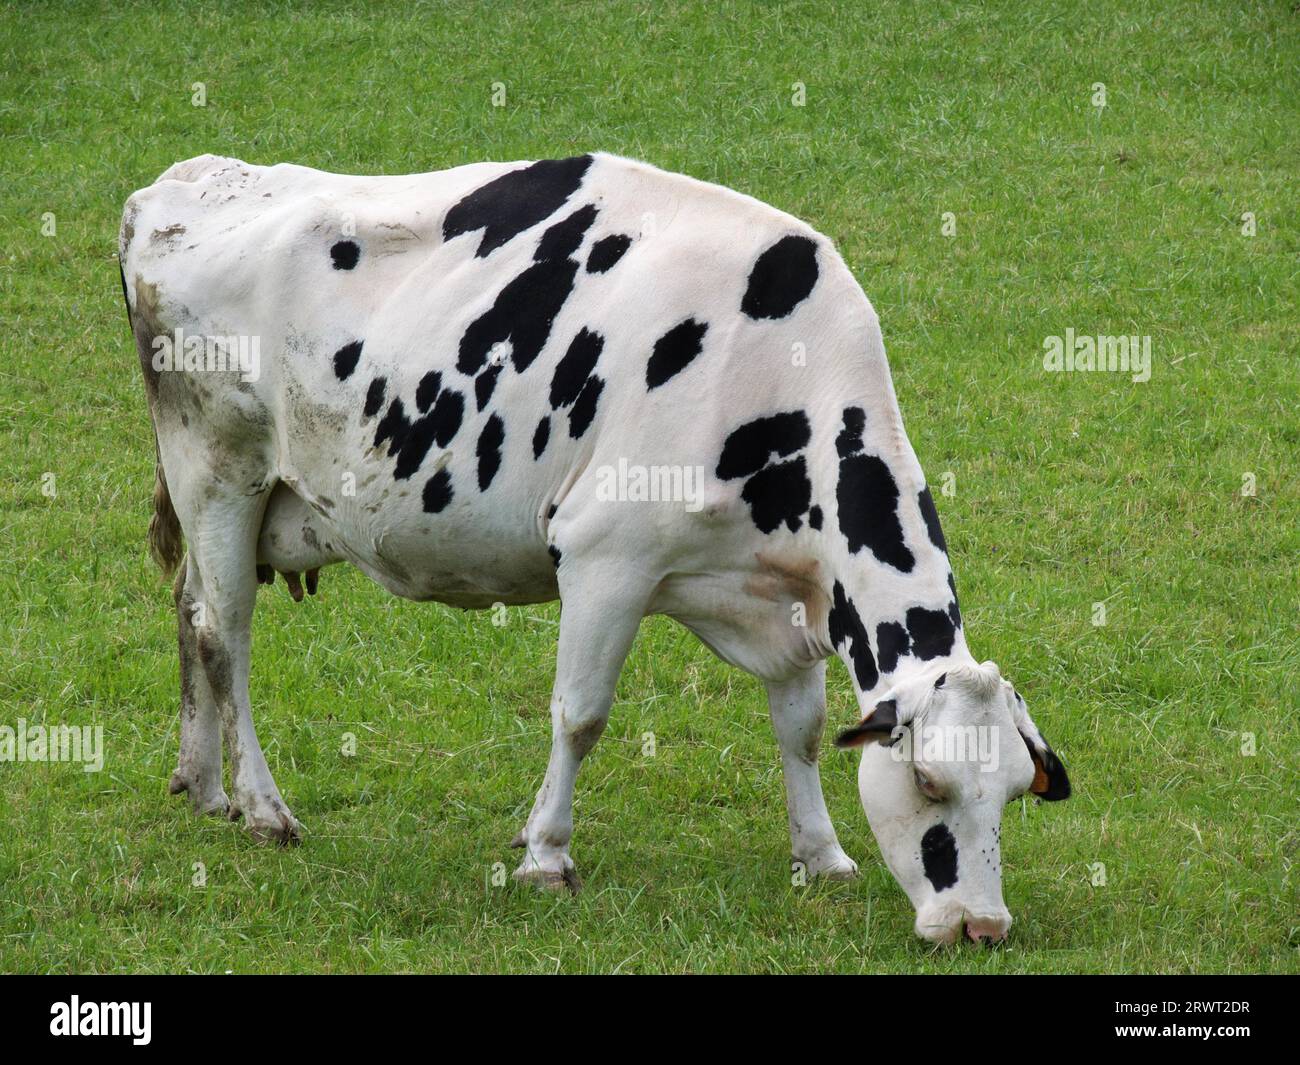 Schwarz-weiße Kuh weidet, grünes Gras im Hintergrund Stockfoto